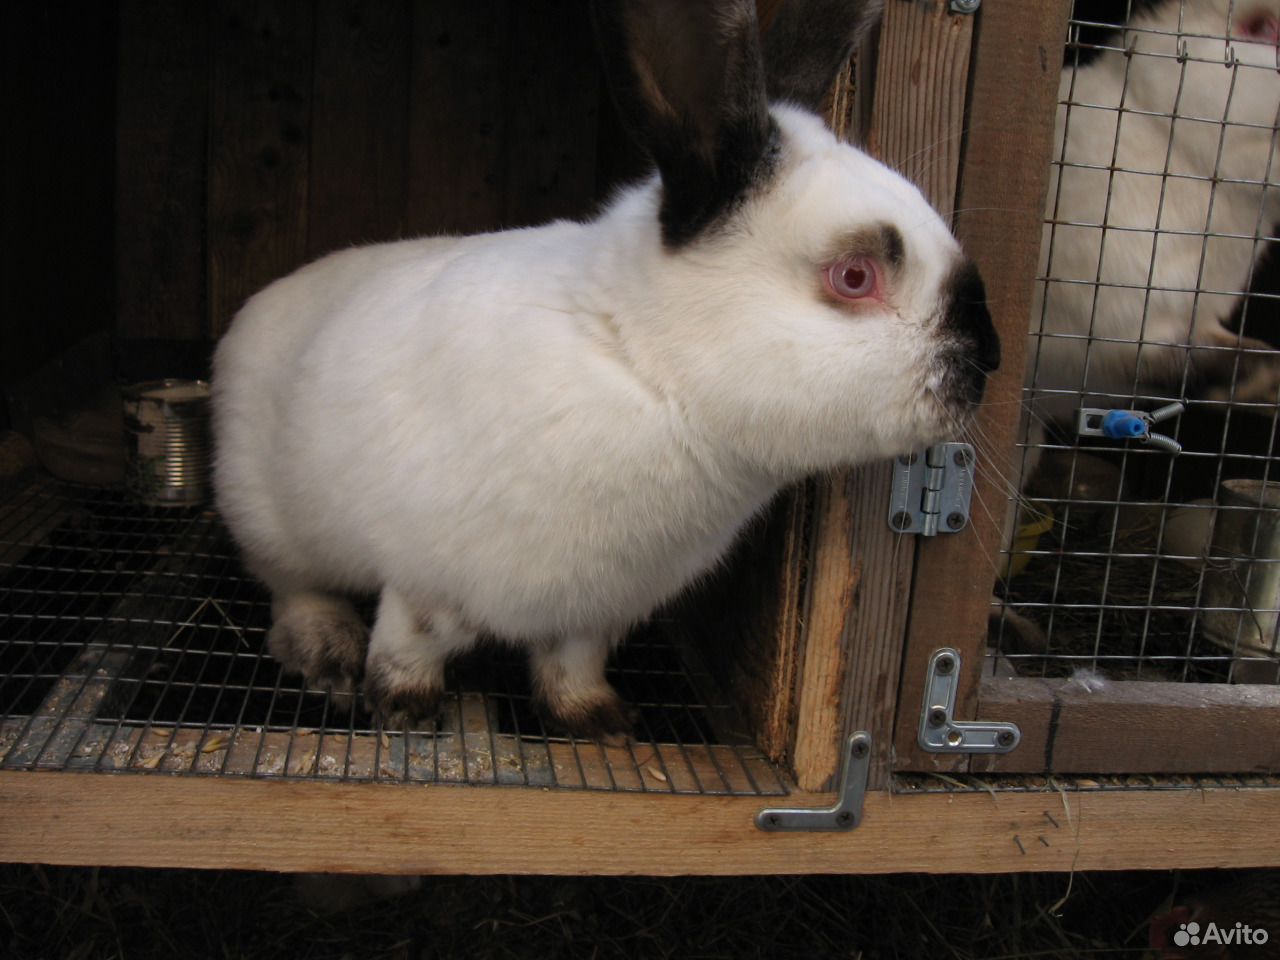 Авито породы кроликов. Купить кролика в Красноярске на племя. Купить чистопородных элитных бургундских кроликов на племя авито.